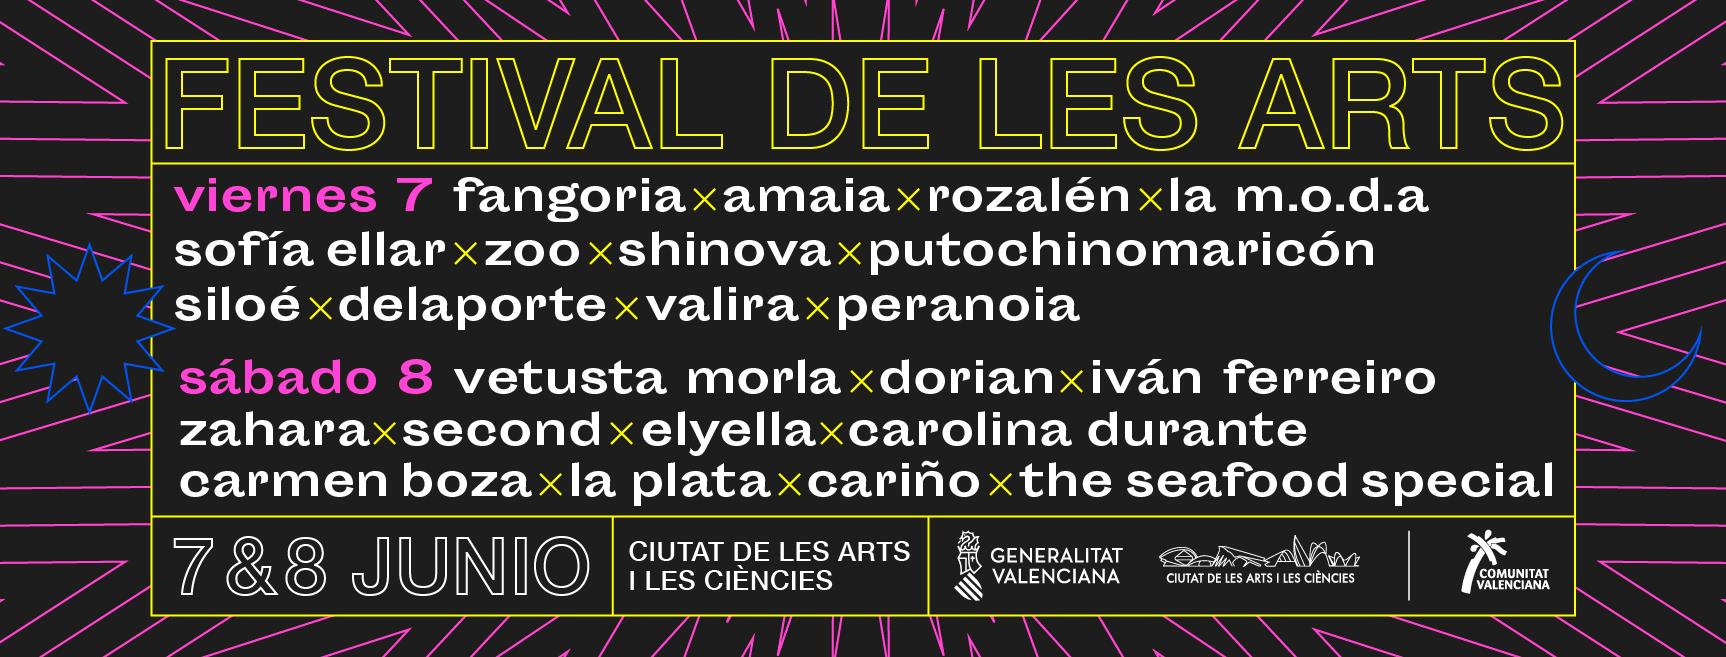 Festival de Les Arts 2019: Confirmaciones y entradas